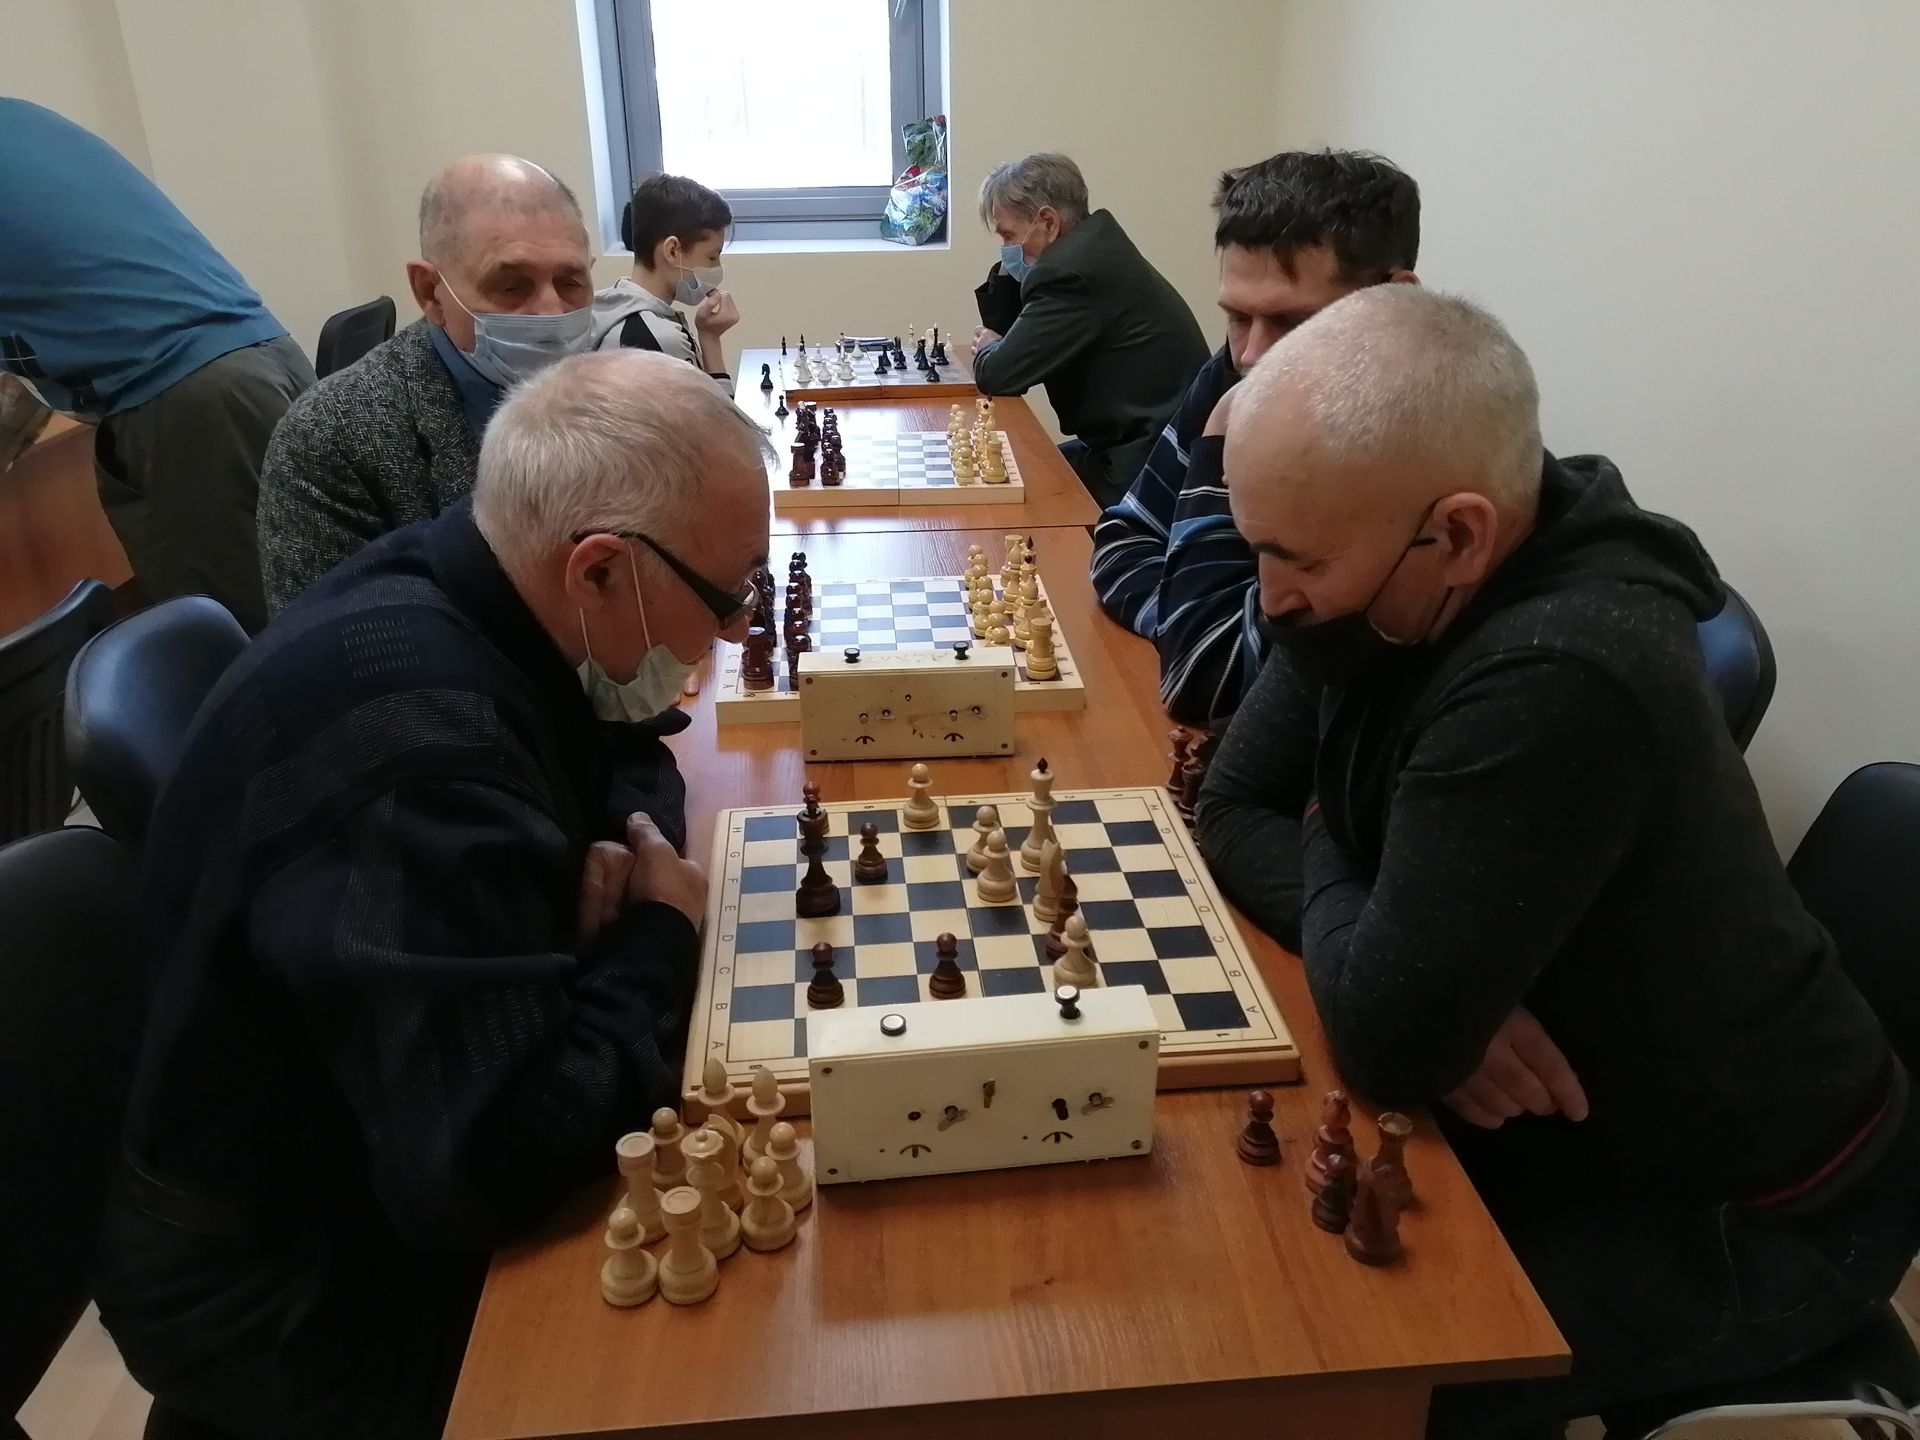  В Буинске проходит зональный тур соревнований по шахматам. Игры организованы в новом здании +фото